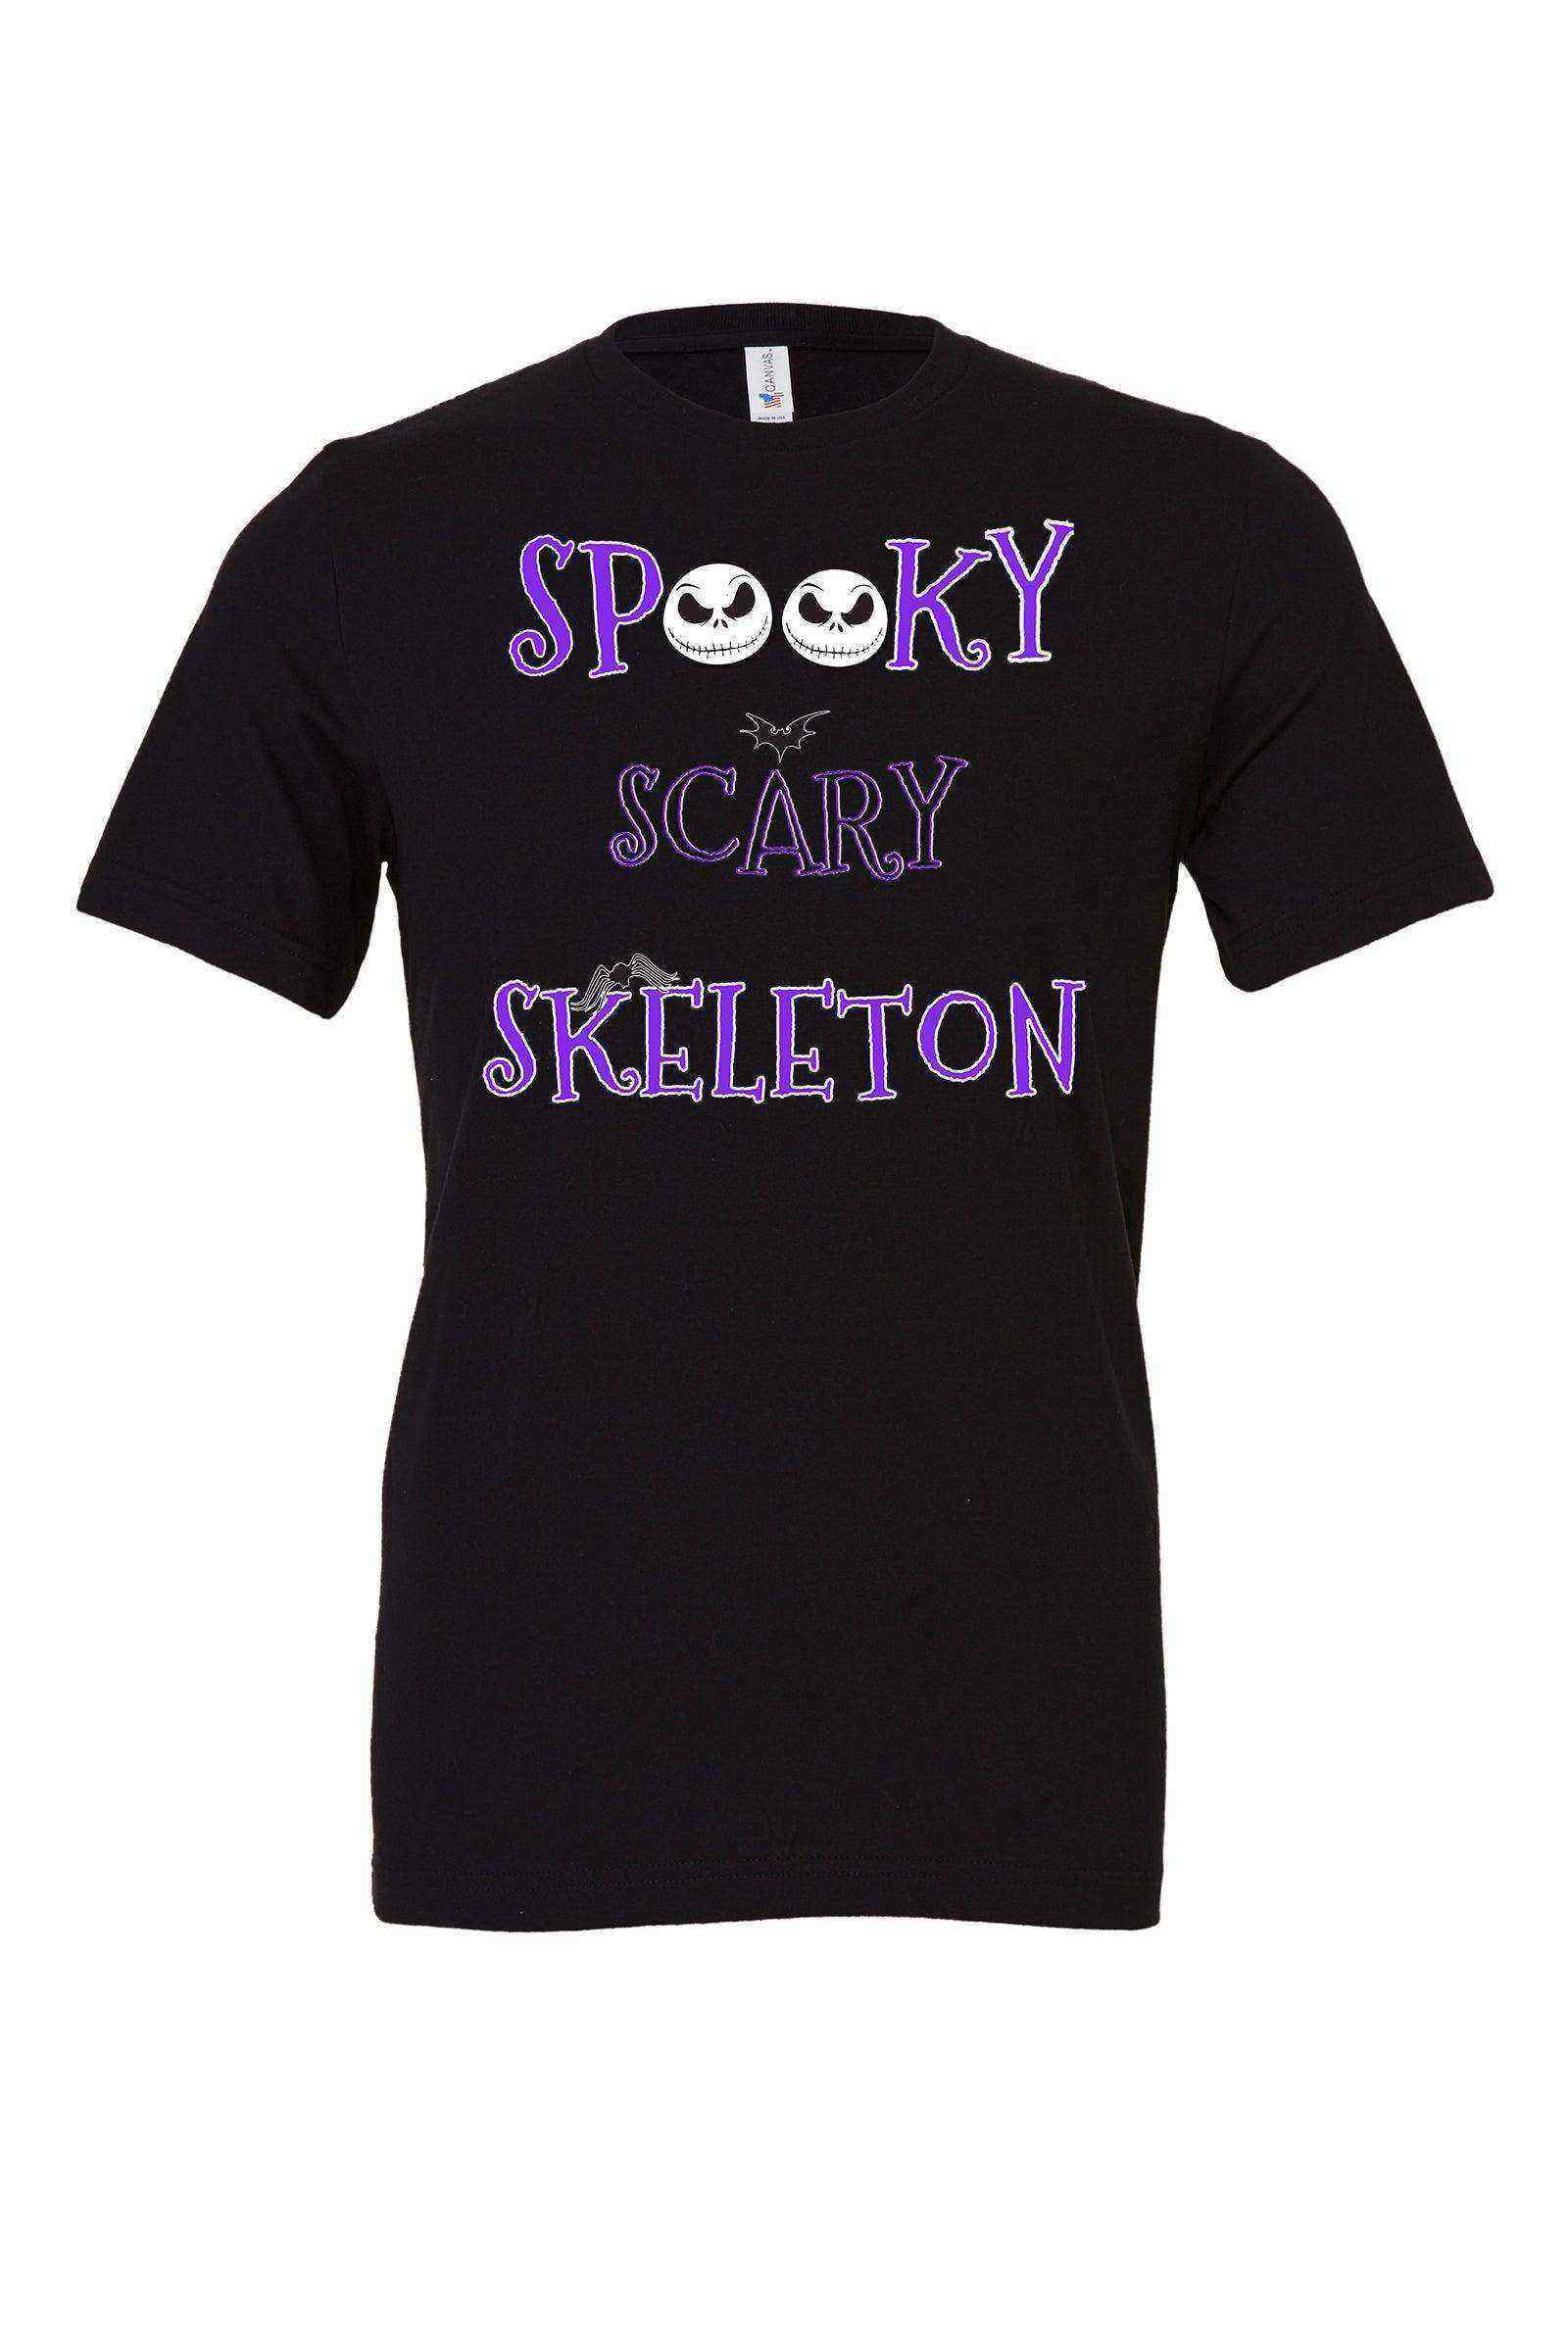 Womens | Spooky Scary Skeleton Shirt | Jack Skellington | Nightmare Before Christmas - Dylan's Tees